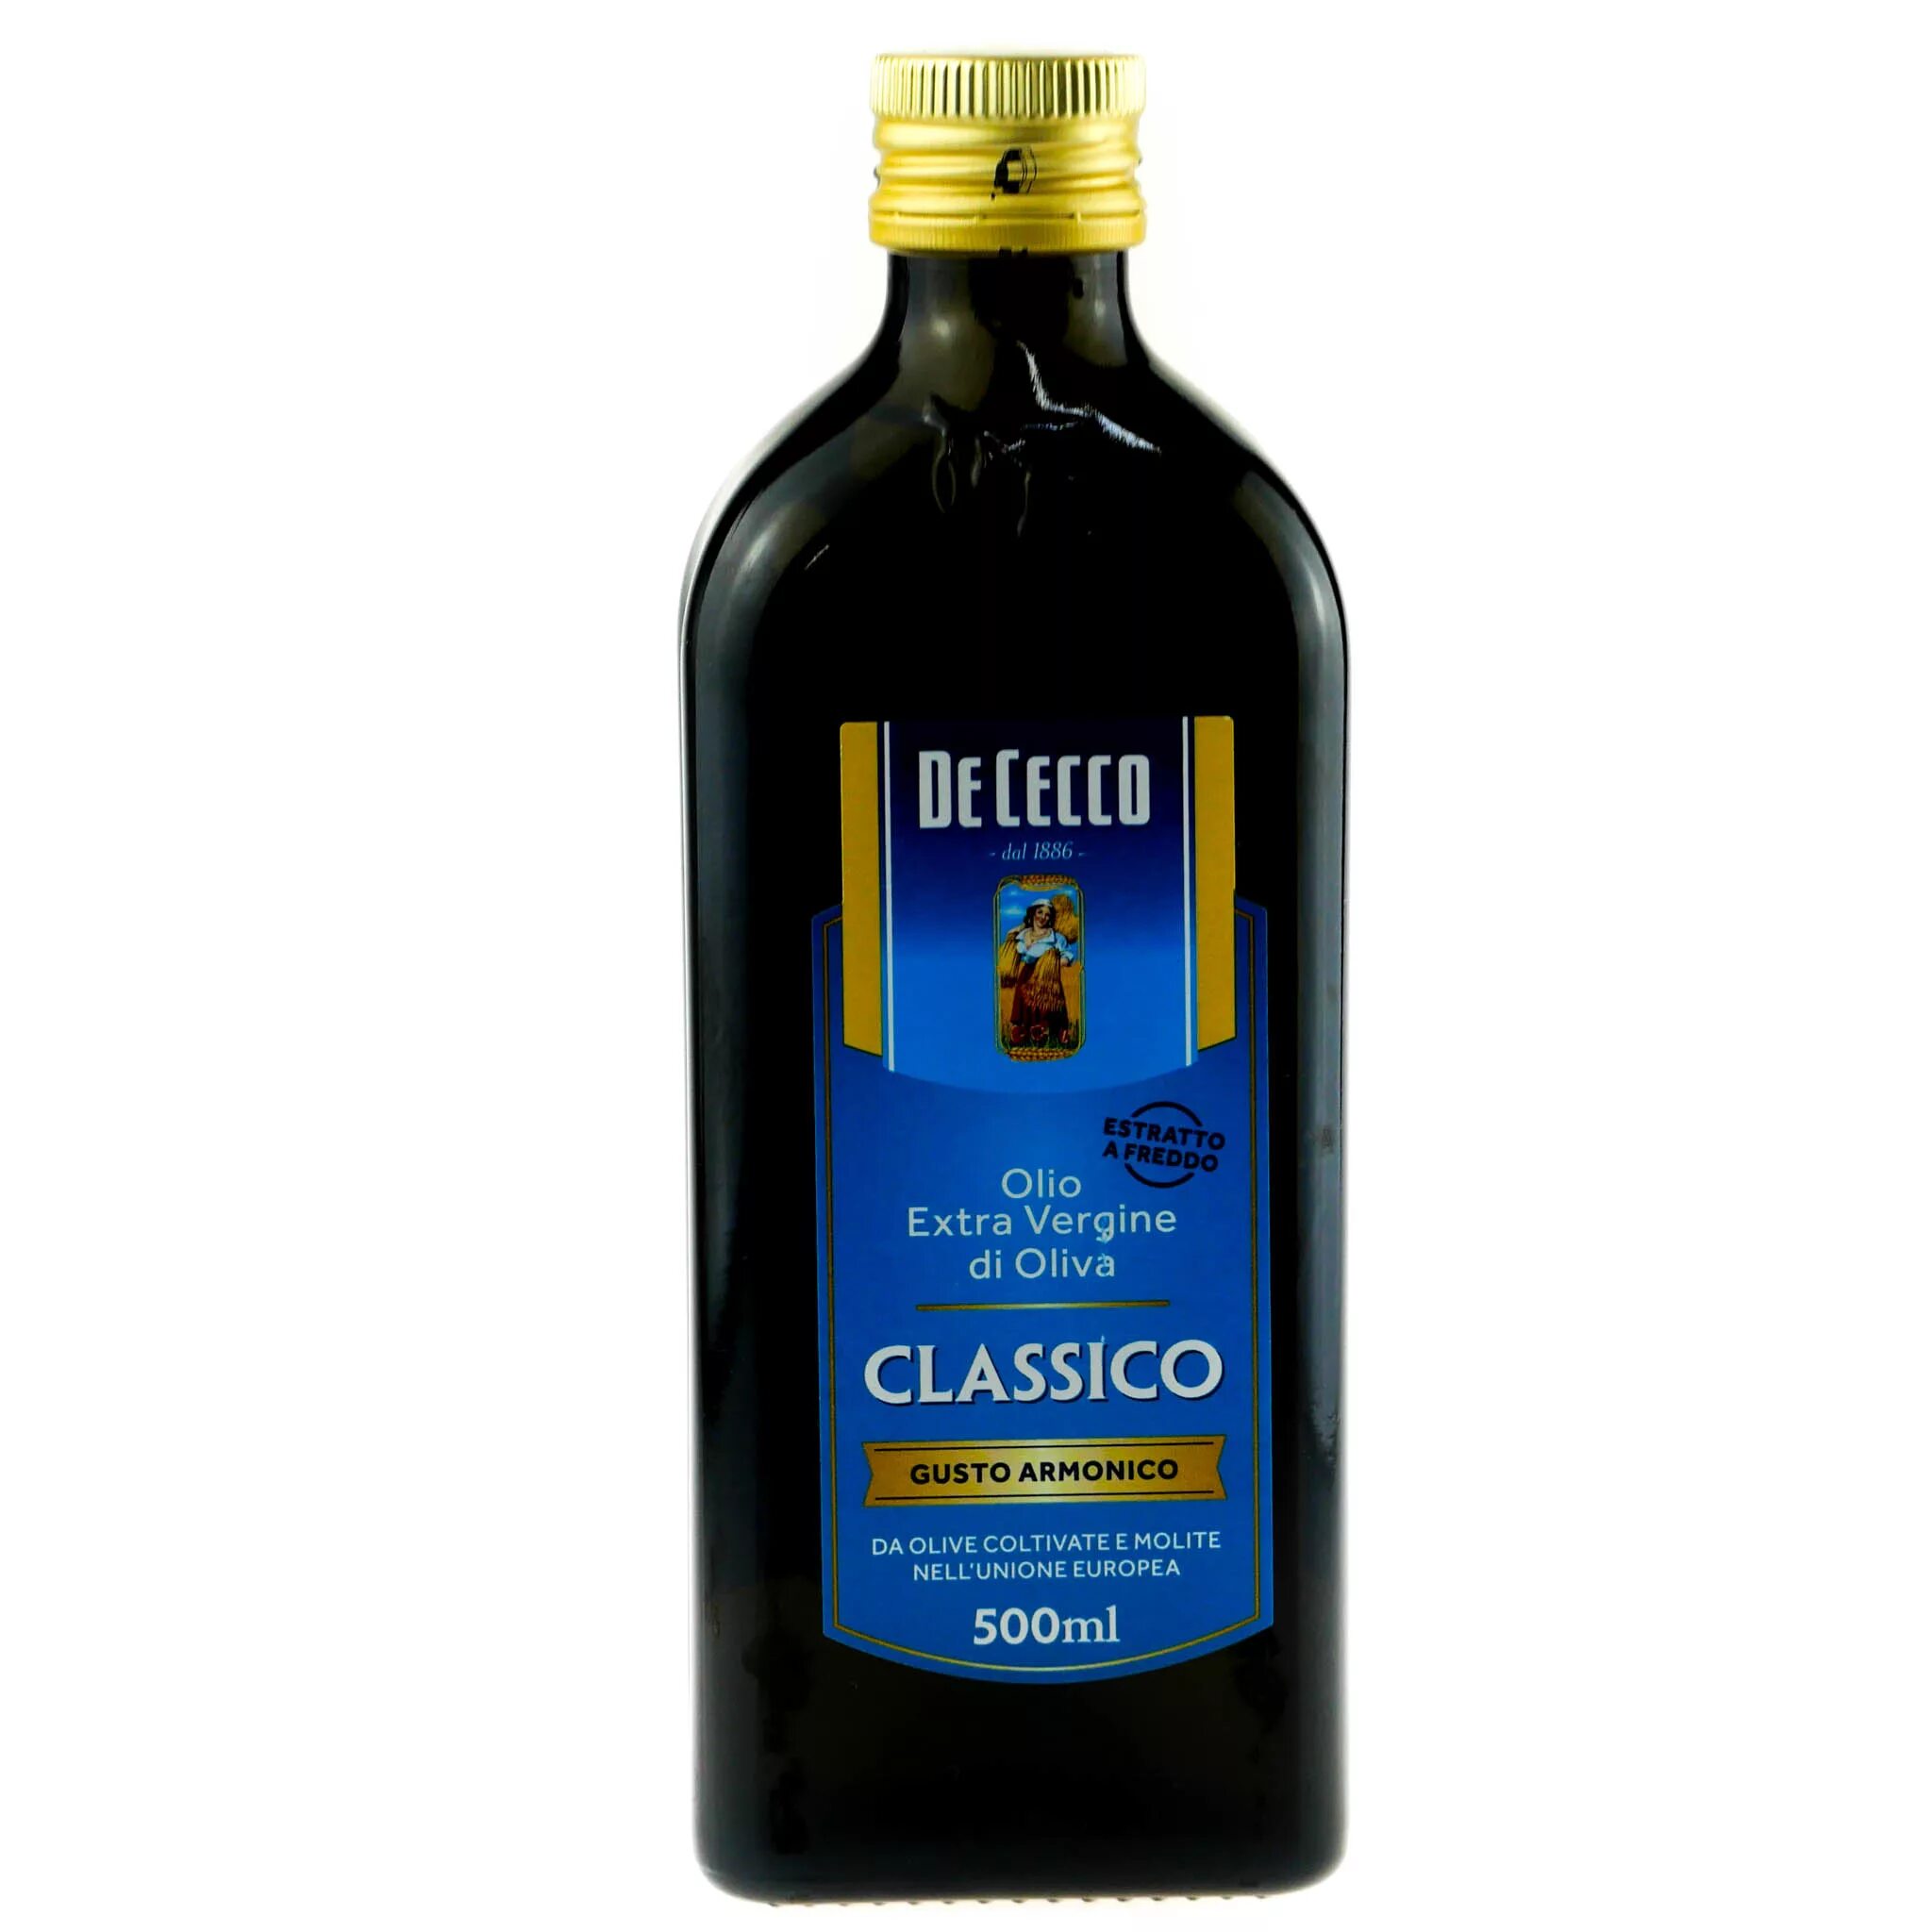 Масло оливковое de Cecco, 500 мл.. De Cecco оливковое нерафинированное 500мл. Масло оливковое de Cecco Extra vergine, 0,5л. Оливковое масло de Cecco Classico 500мл маркировка.